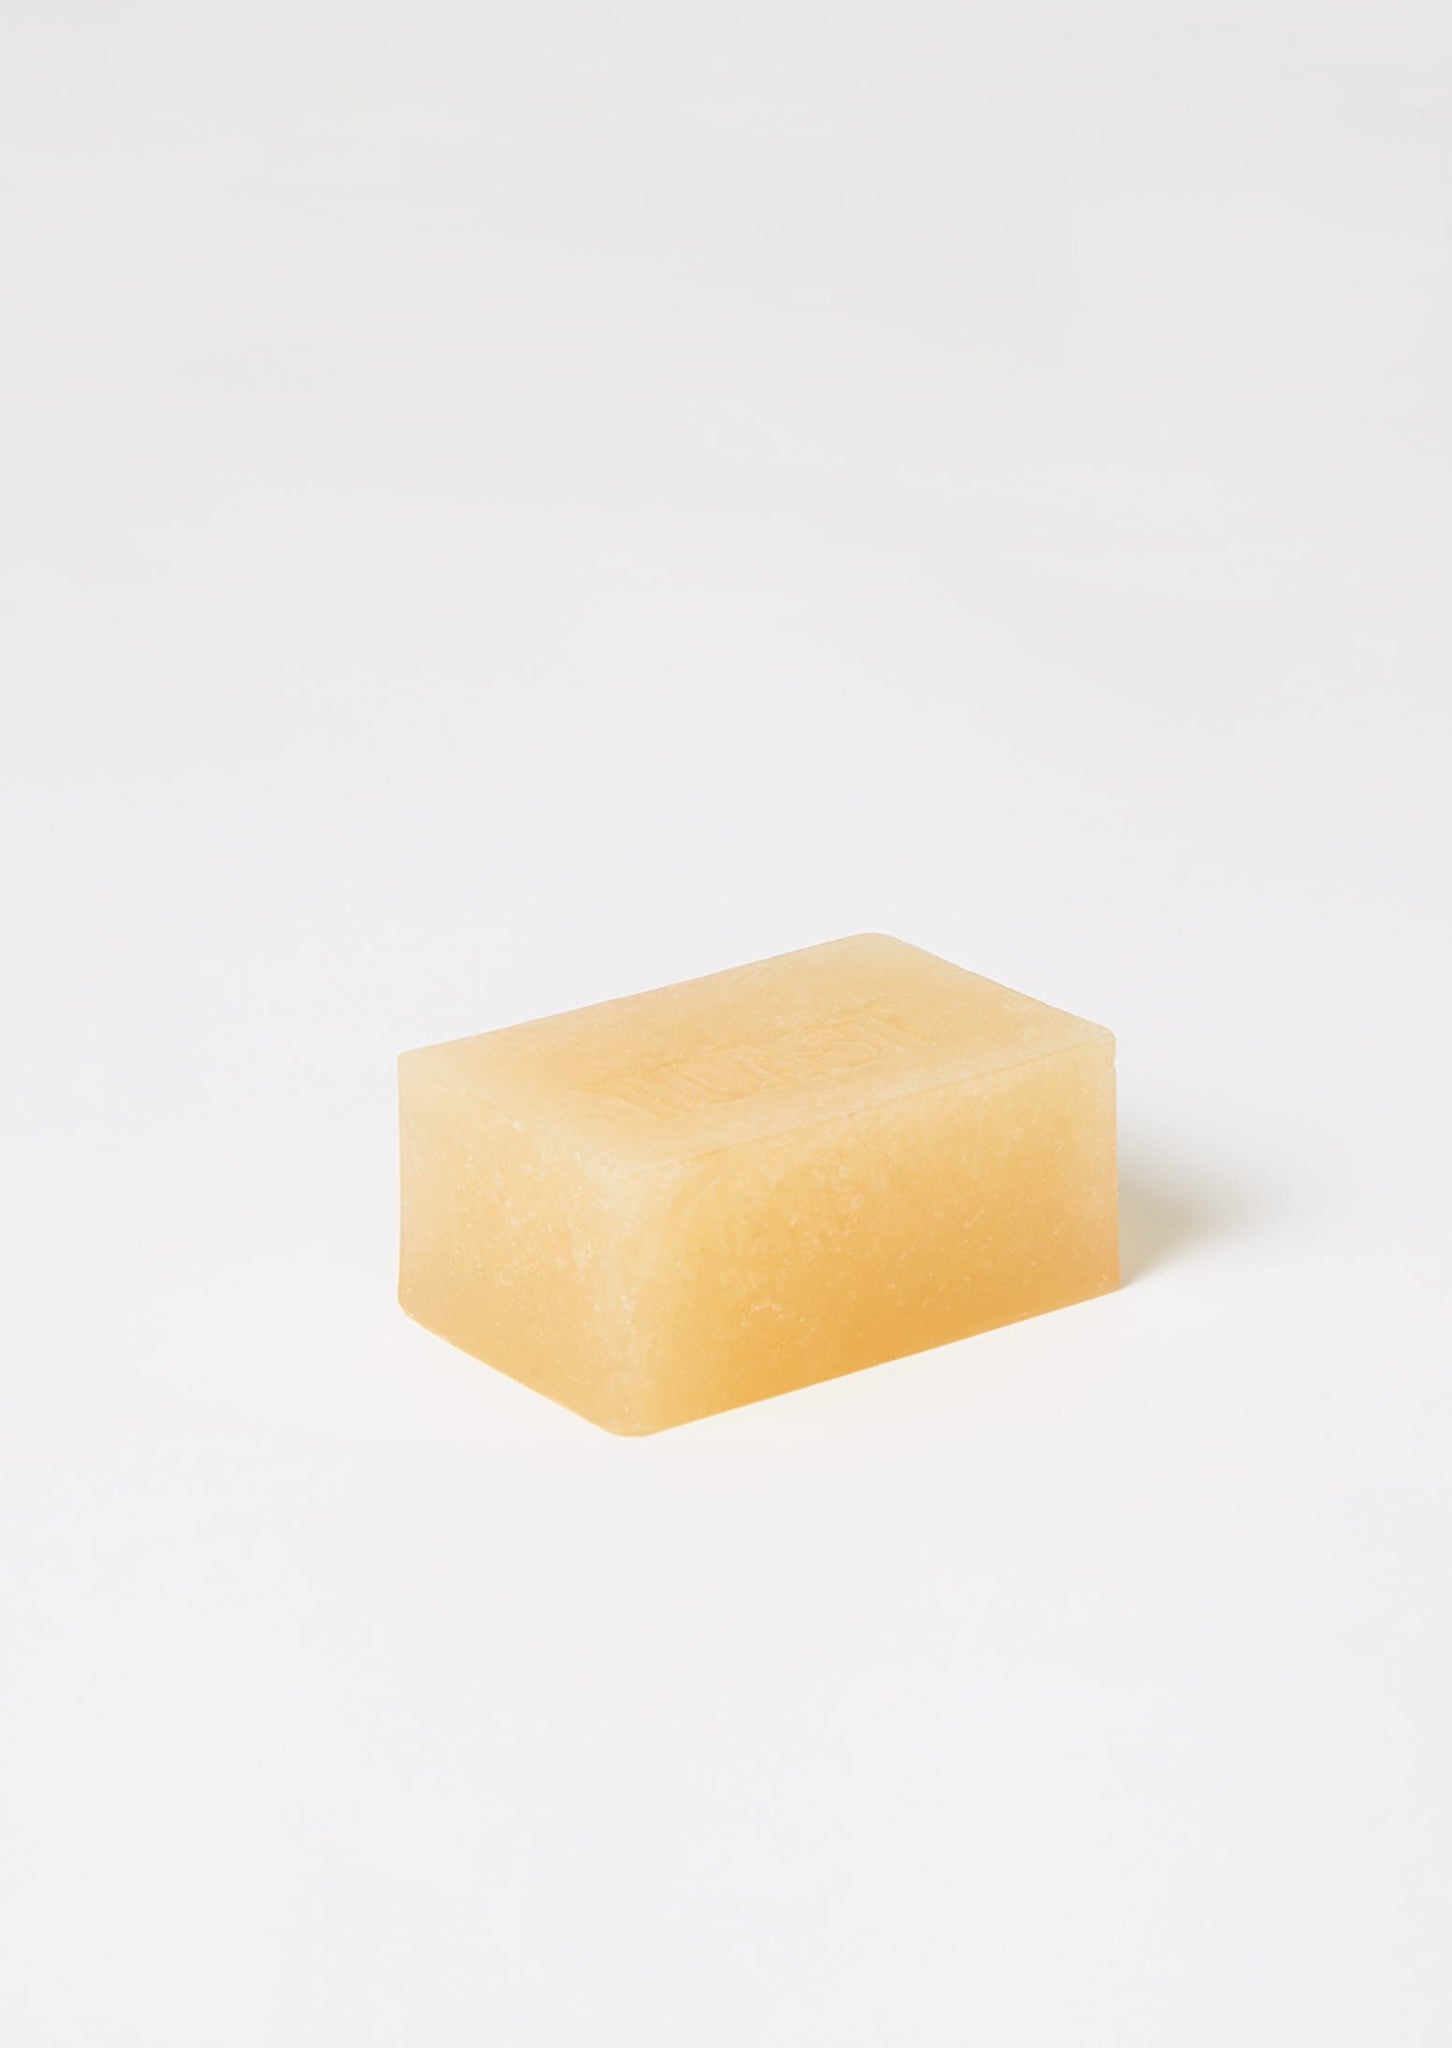 Petitgrain Glycerine Soap Block | Petitgrain